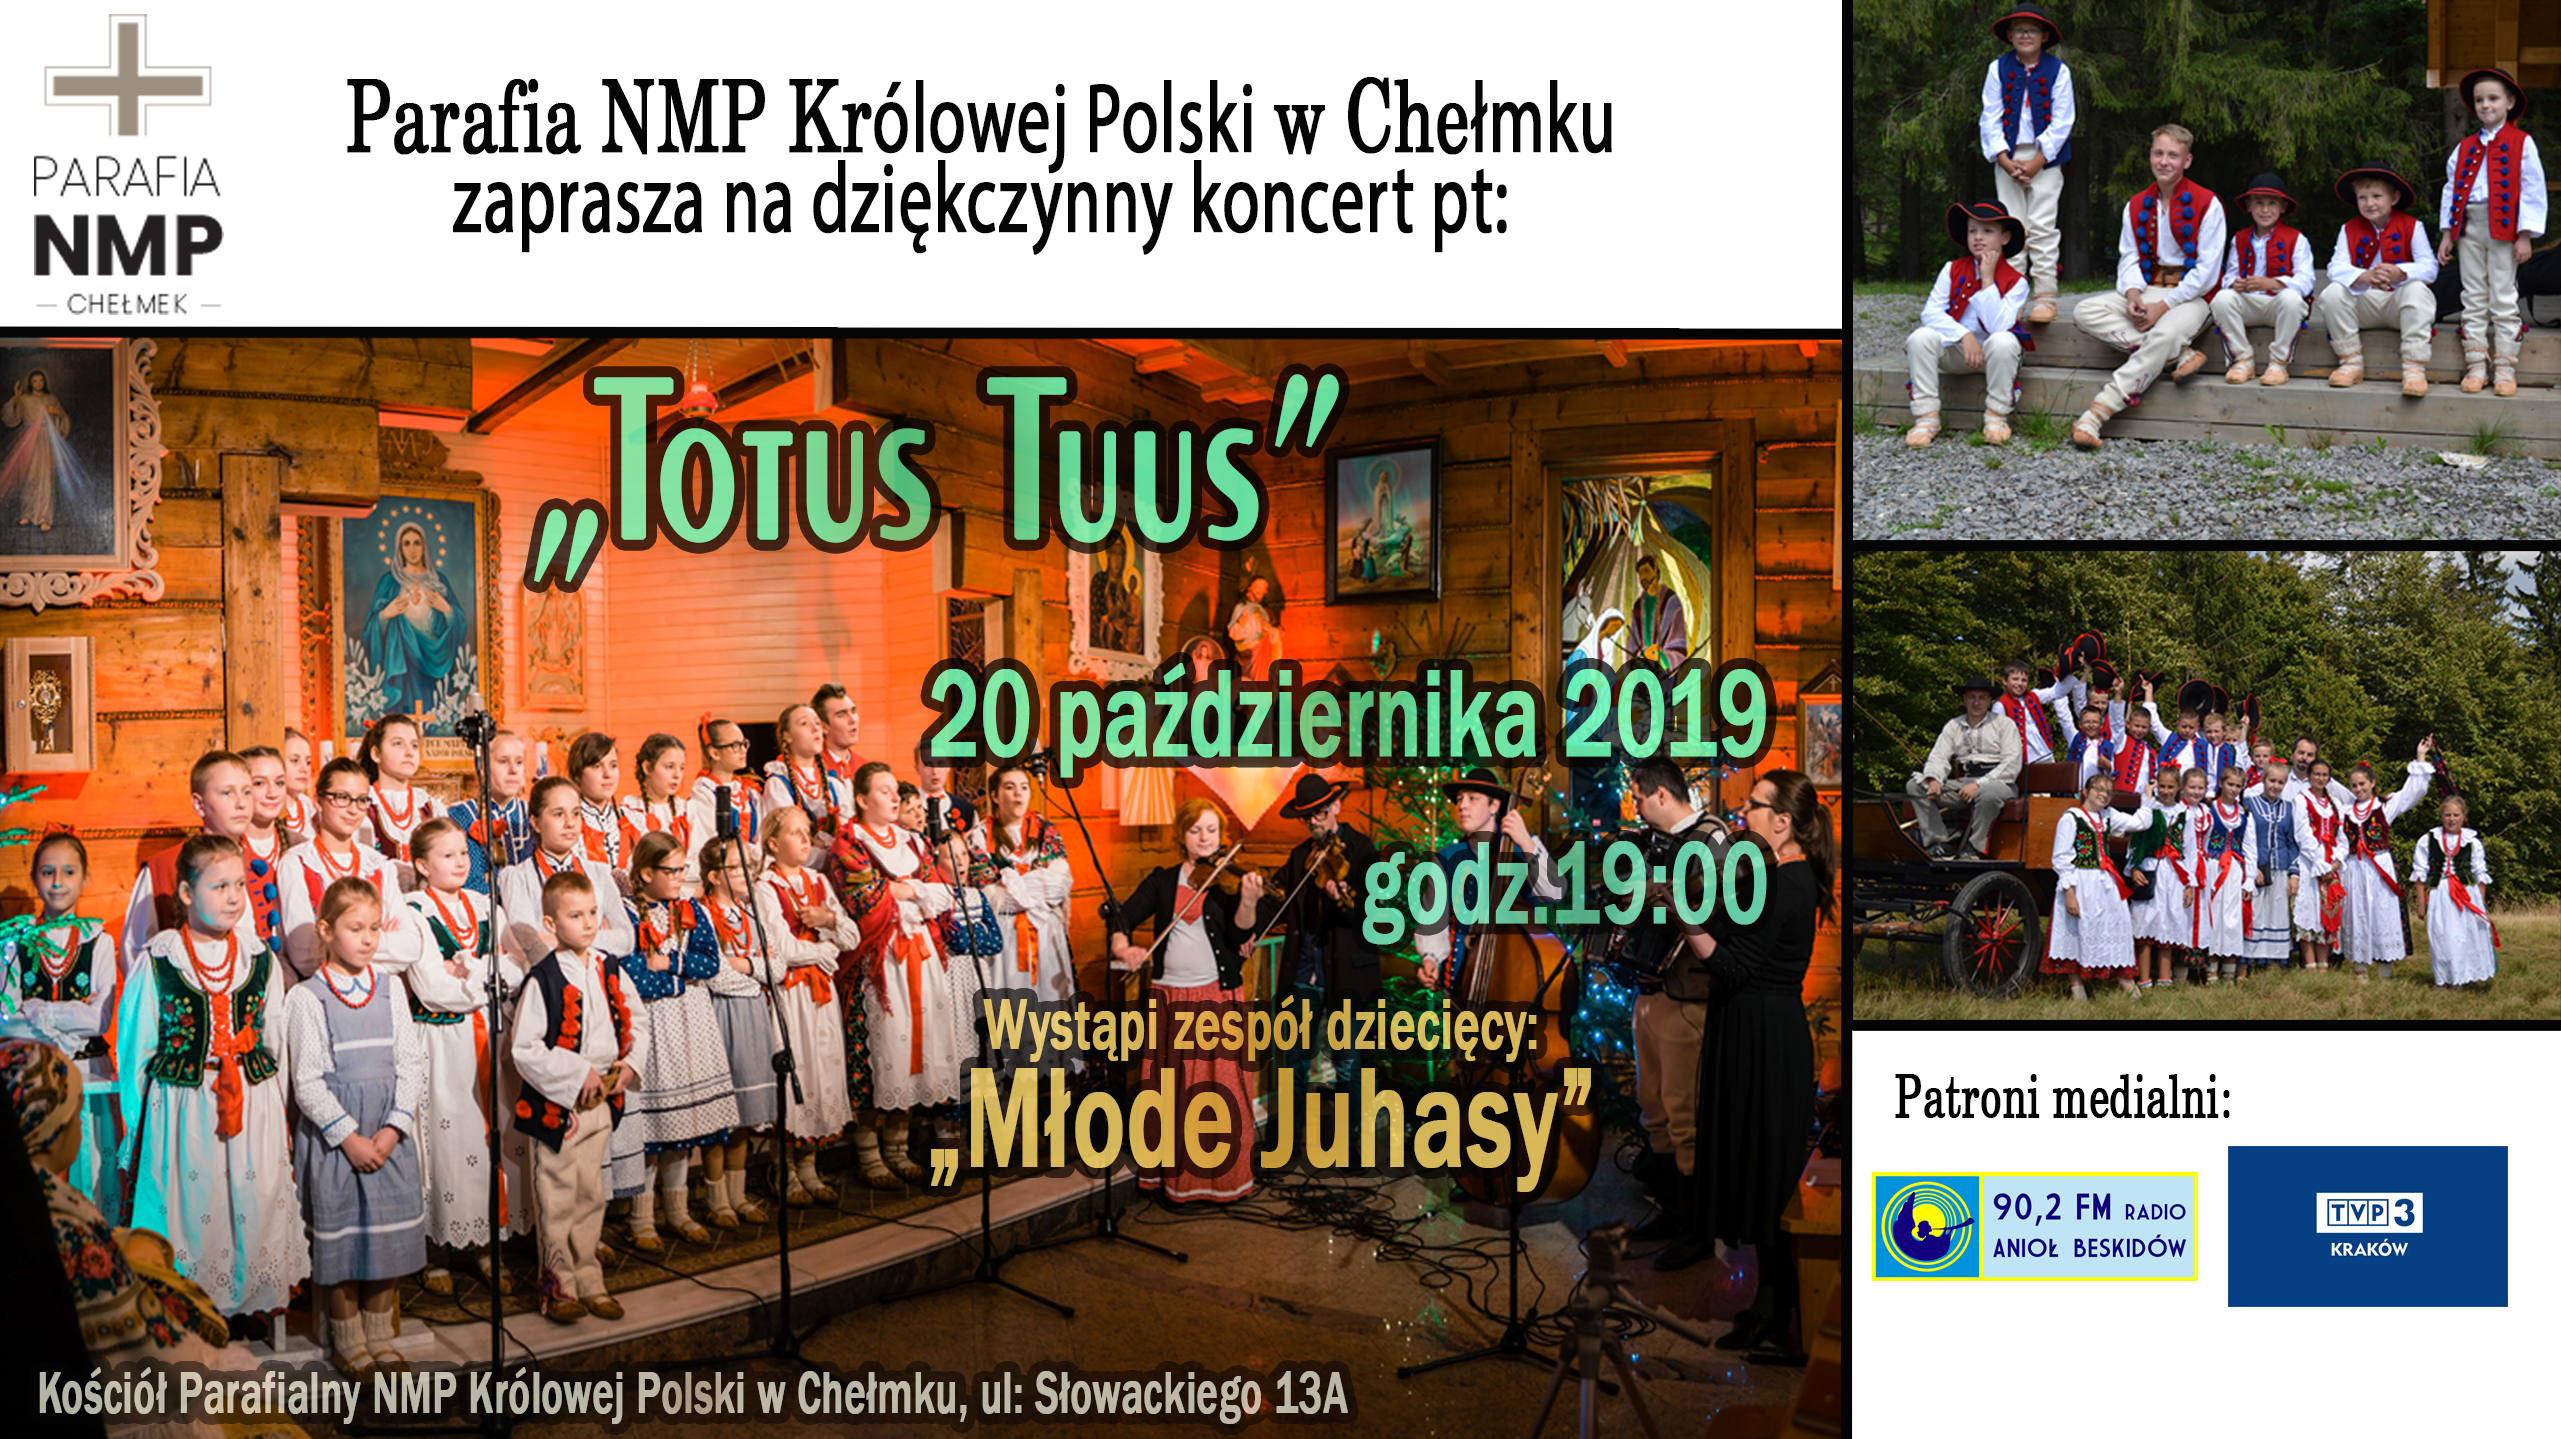 Koncert dziękczynny “TOTUS TUUS” w Chełmku